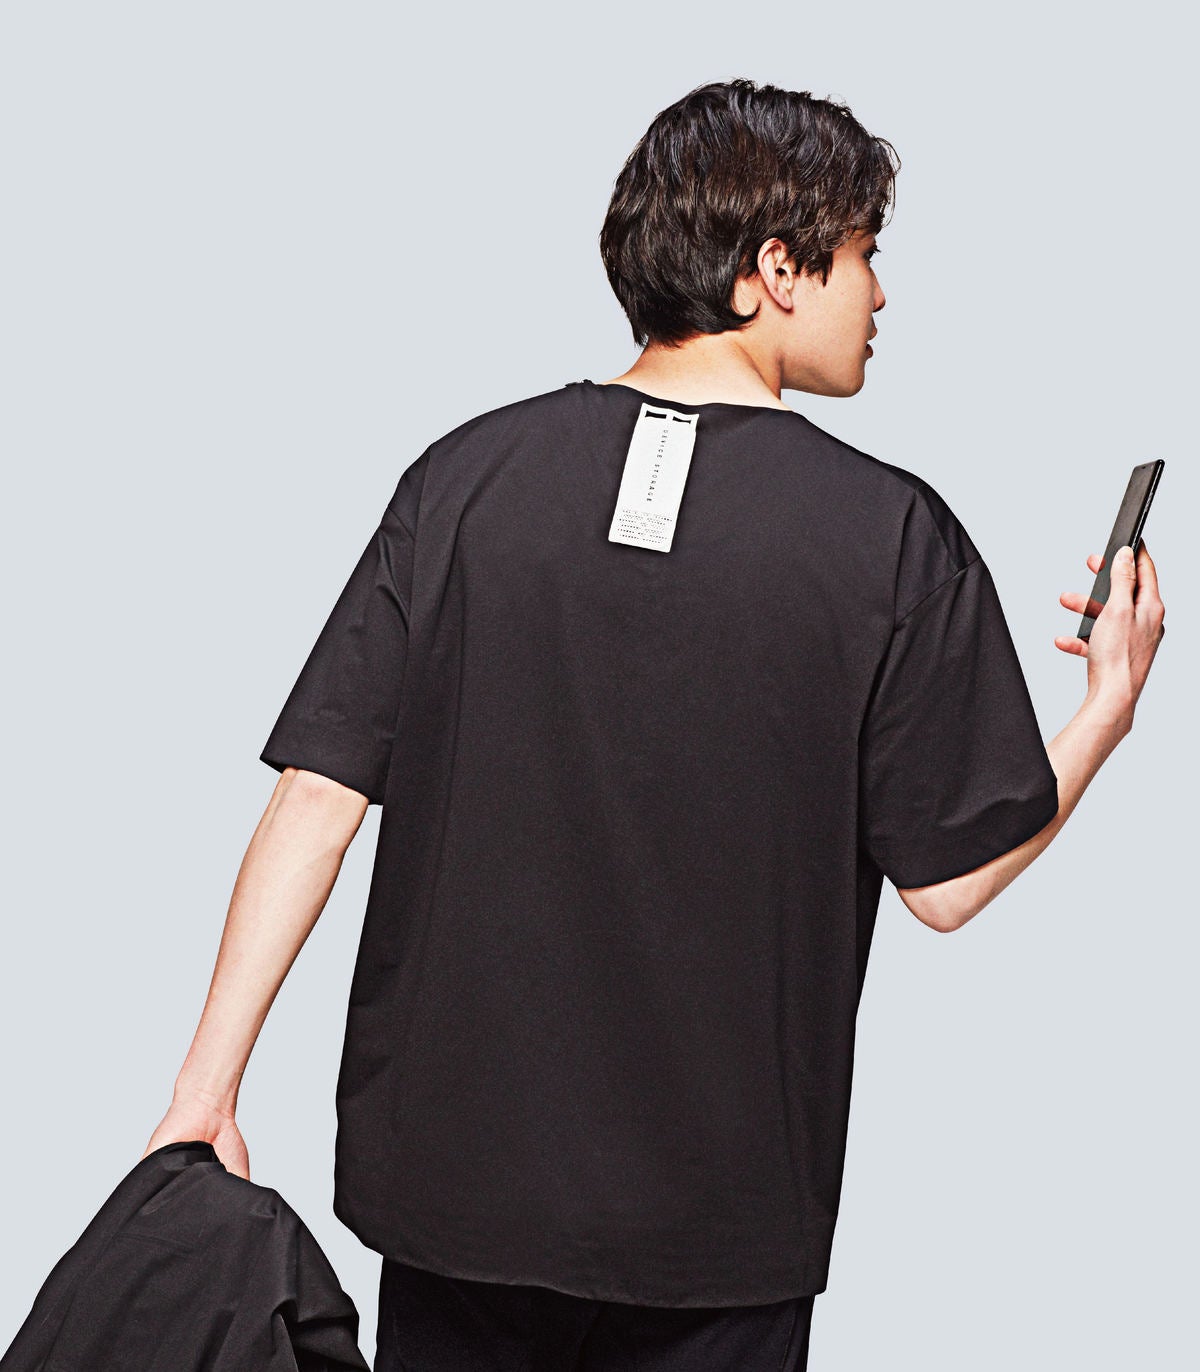 ソニーの“着るクーラー”「REON POCKET」次世代モデル - アパレル